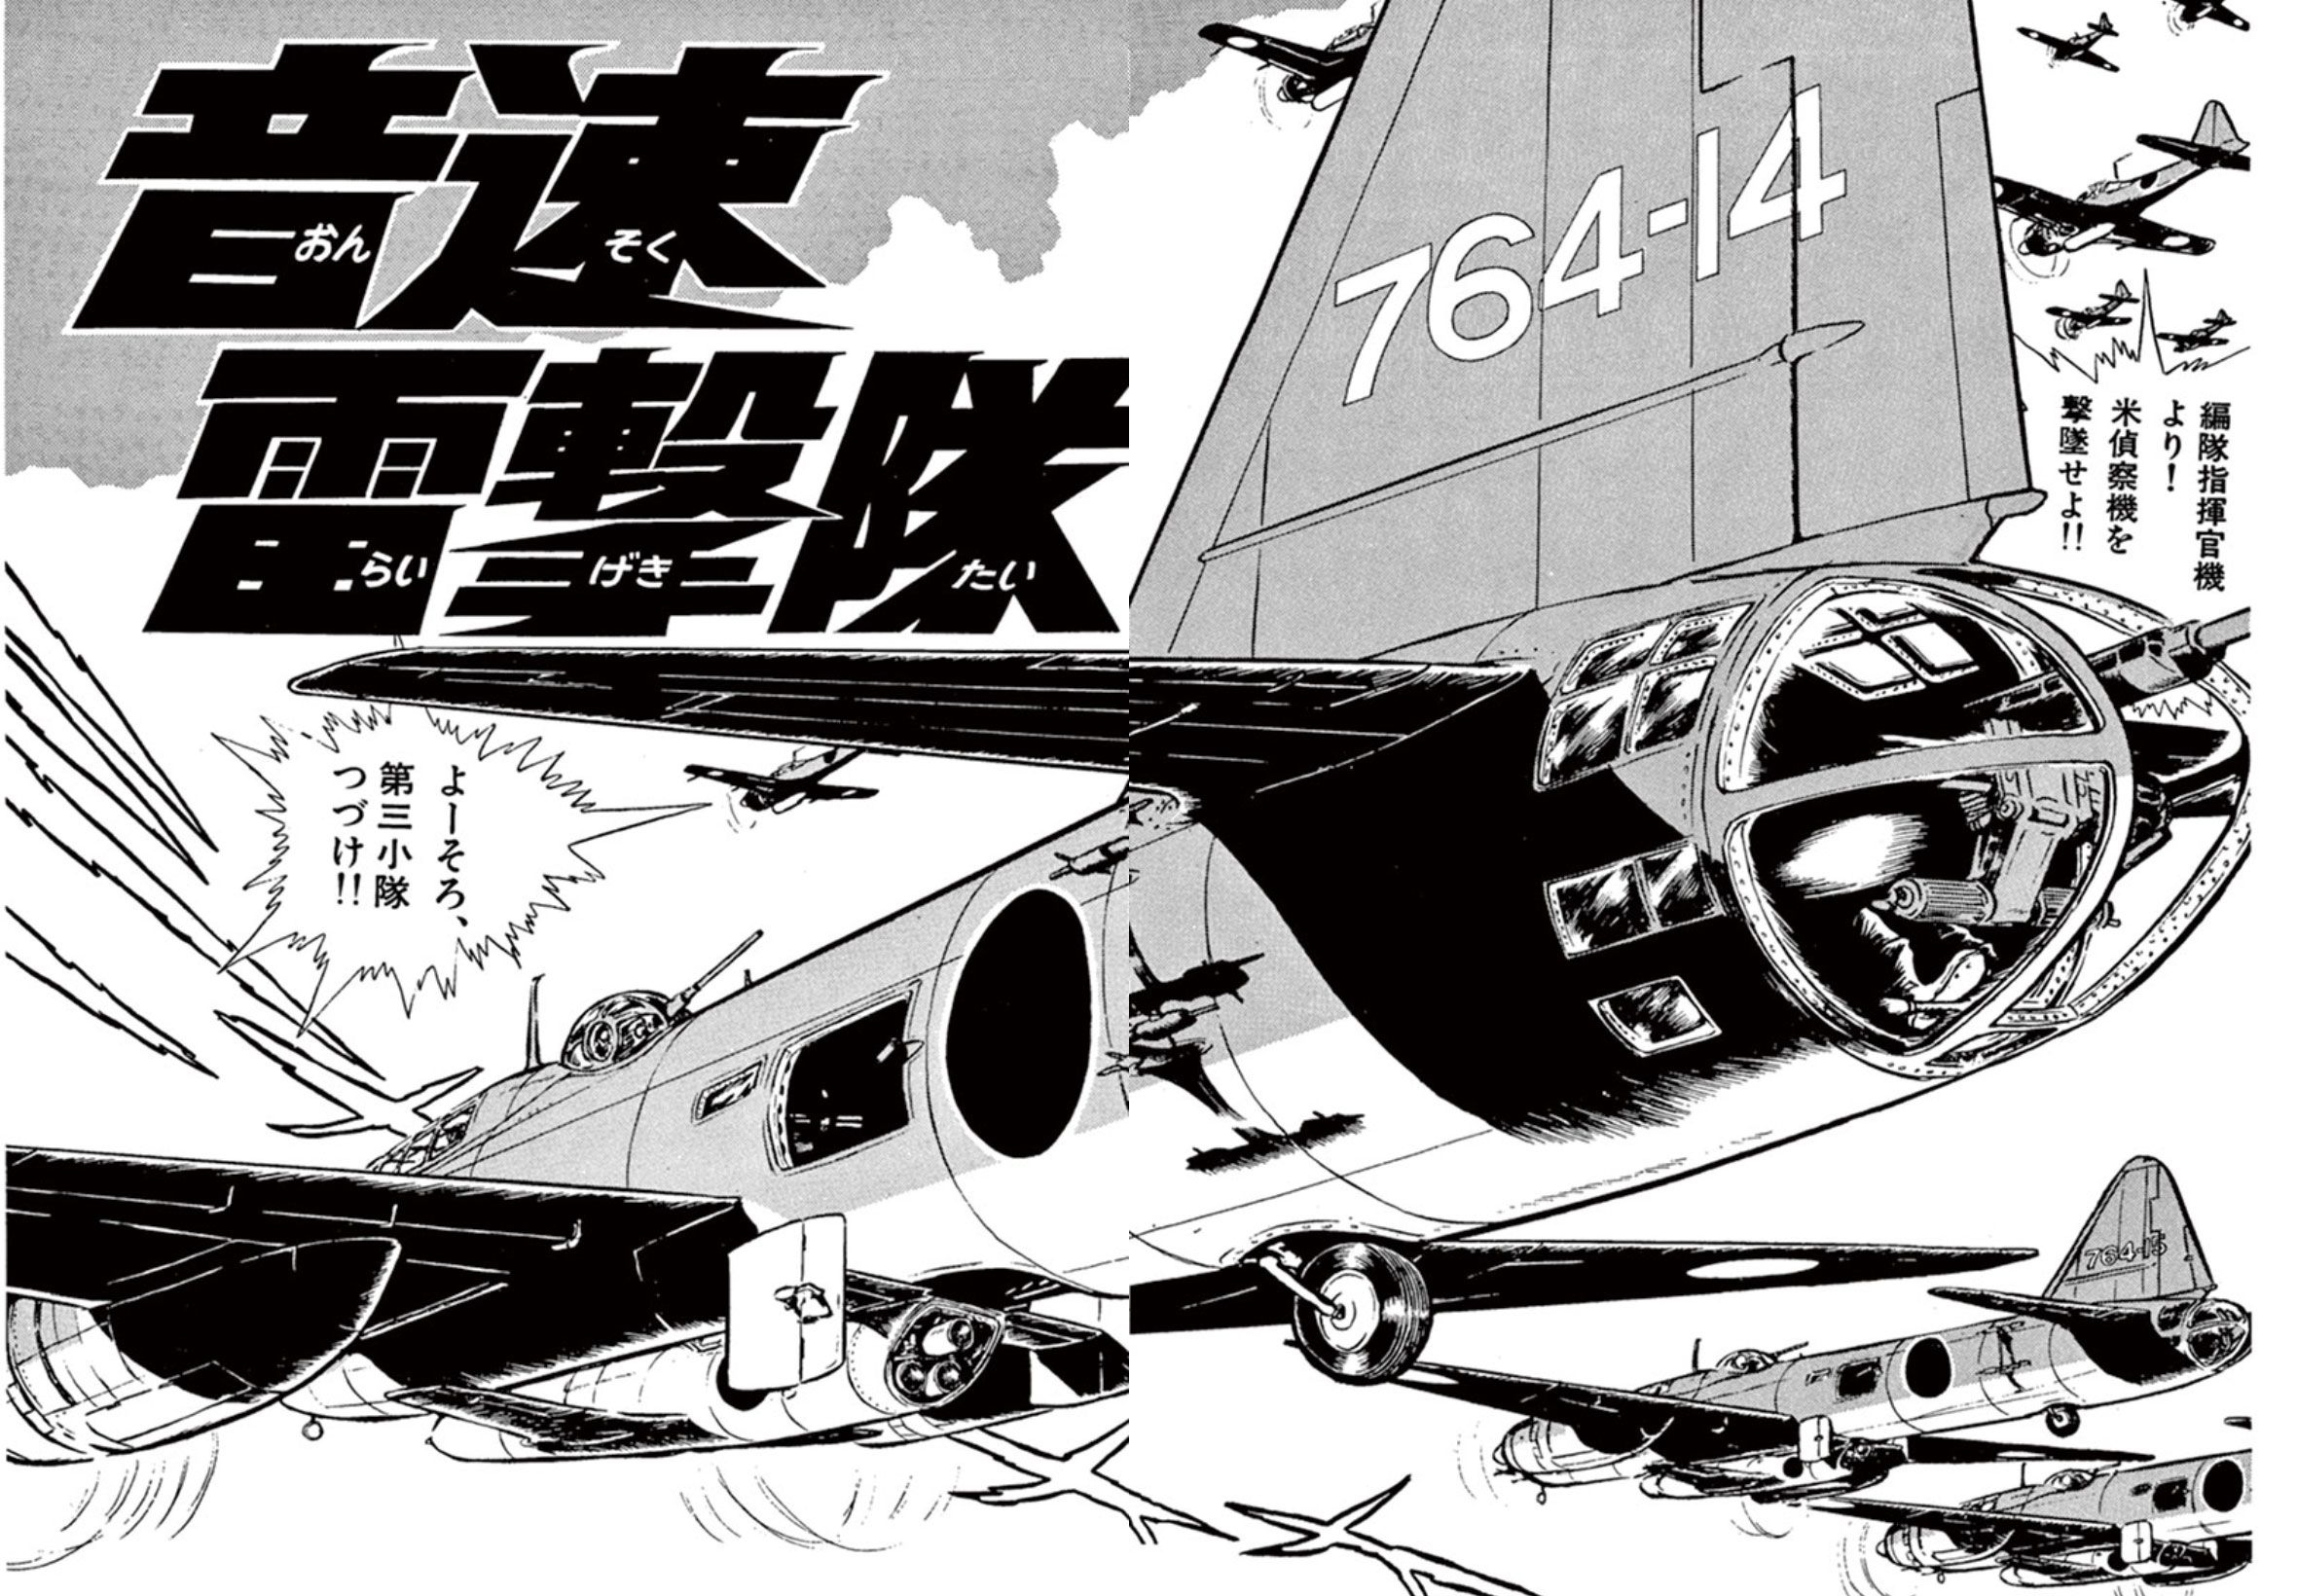 【名作漫画】松本零士が『音速雷撃隊』で描いた“戦場の狂気”「敵も味方も、みんな大バカだ…」